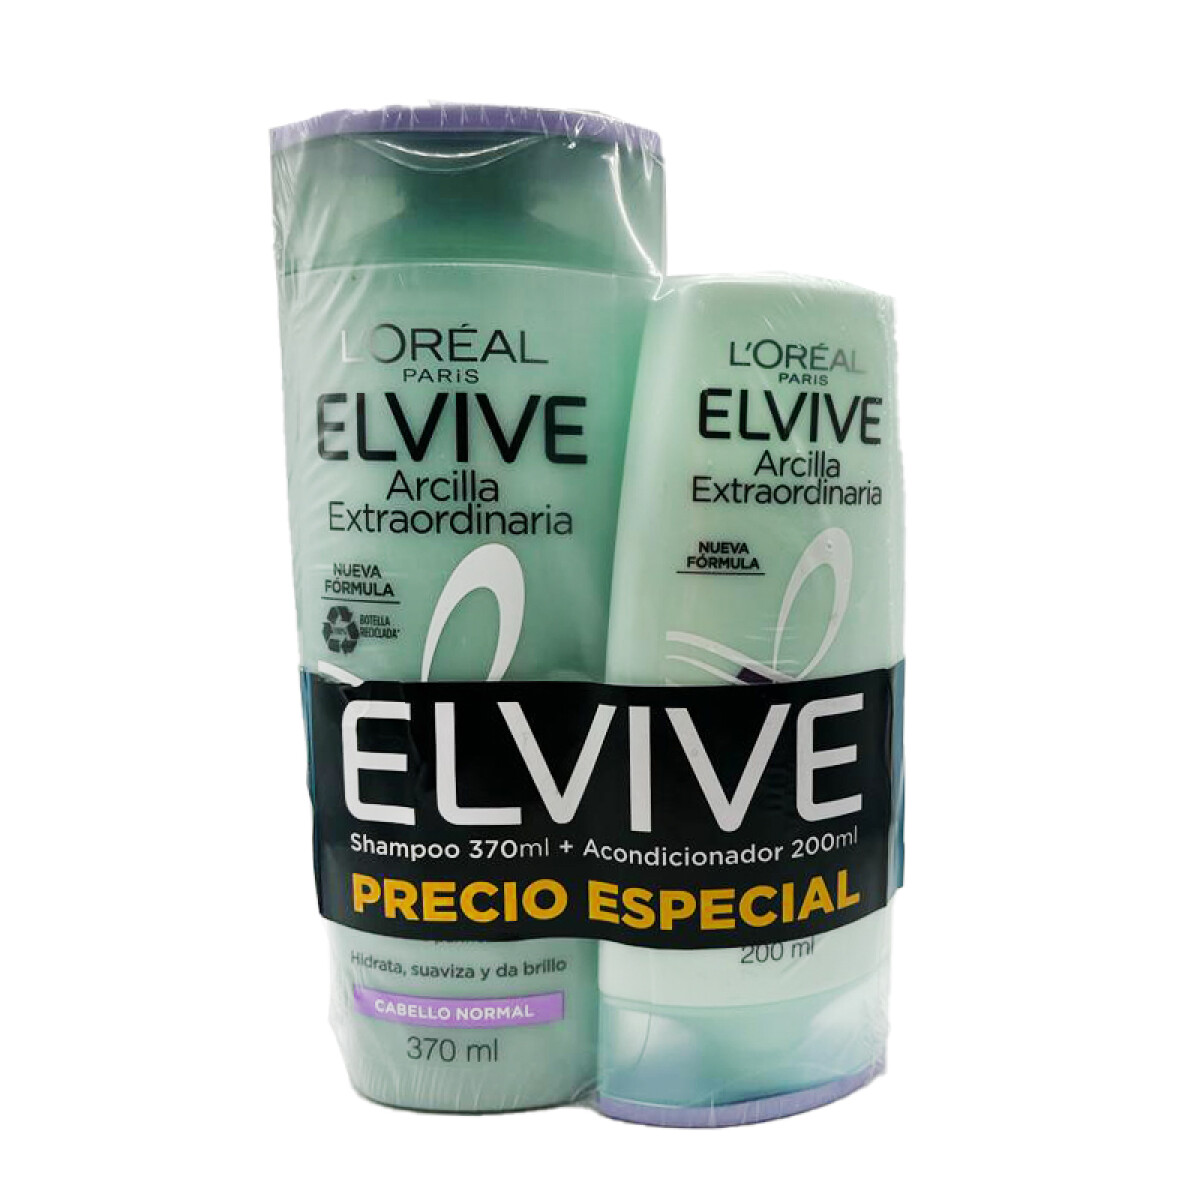 ELVIVE L'OREAL Promoción Shampoo 370 ml + Acondicionador 200 ml - Arcilla Extraordinaria 